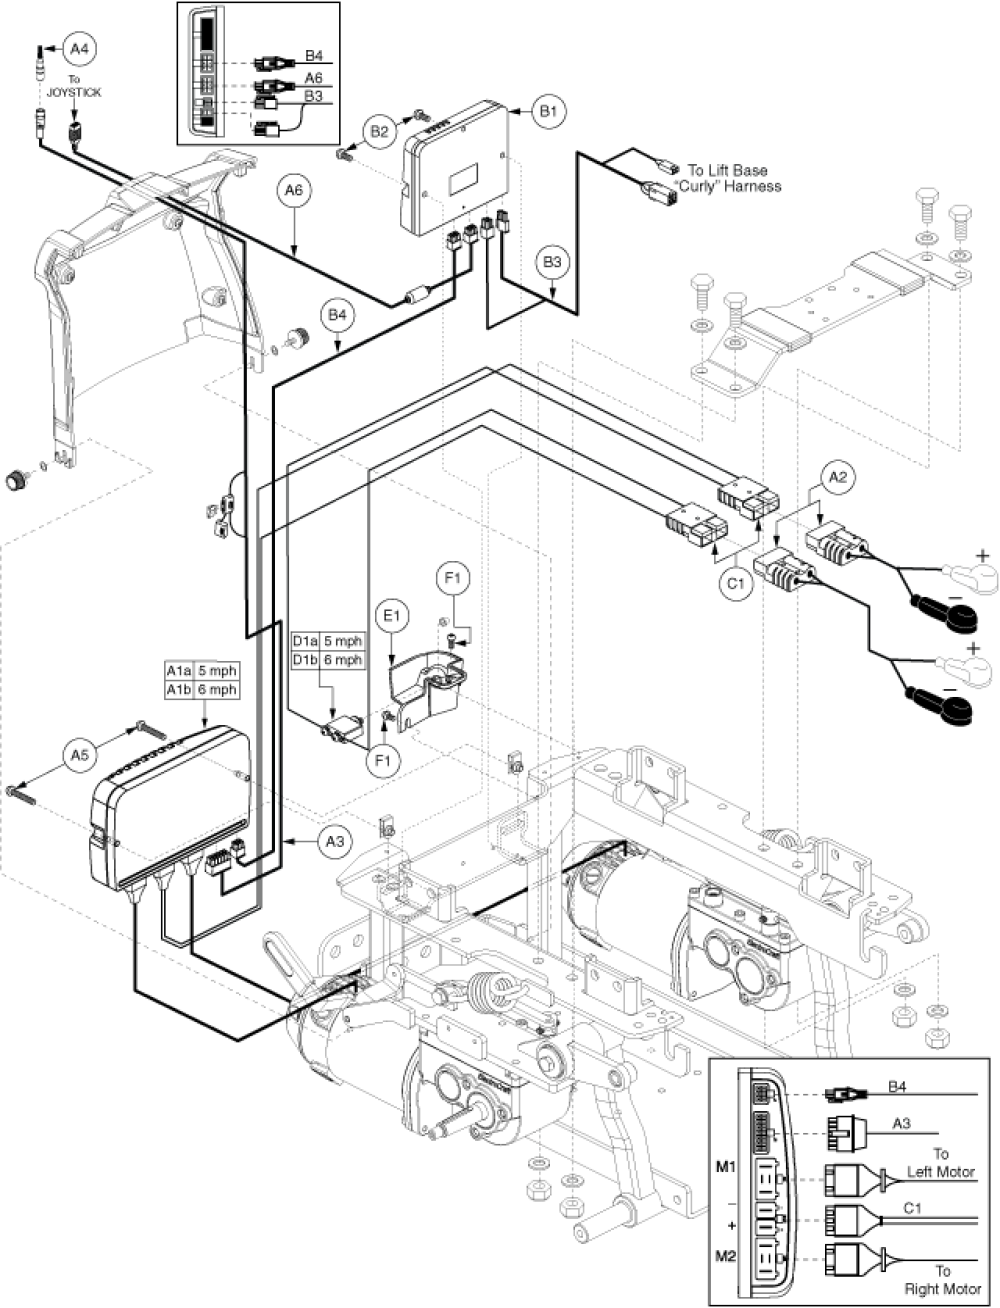 Ne Plus Electronics parts diagram